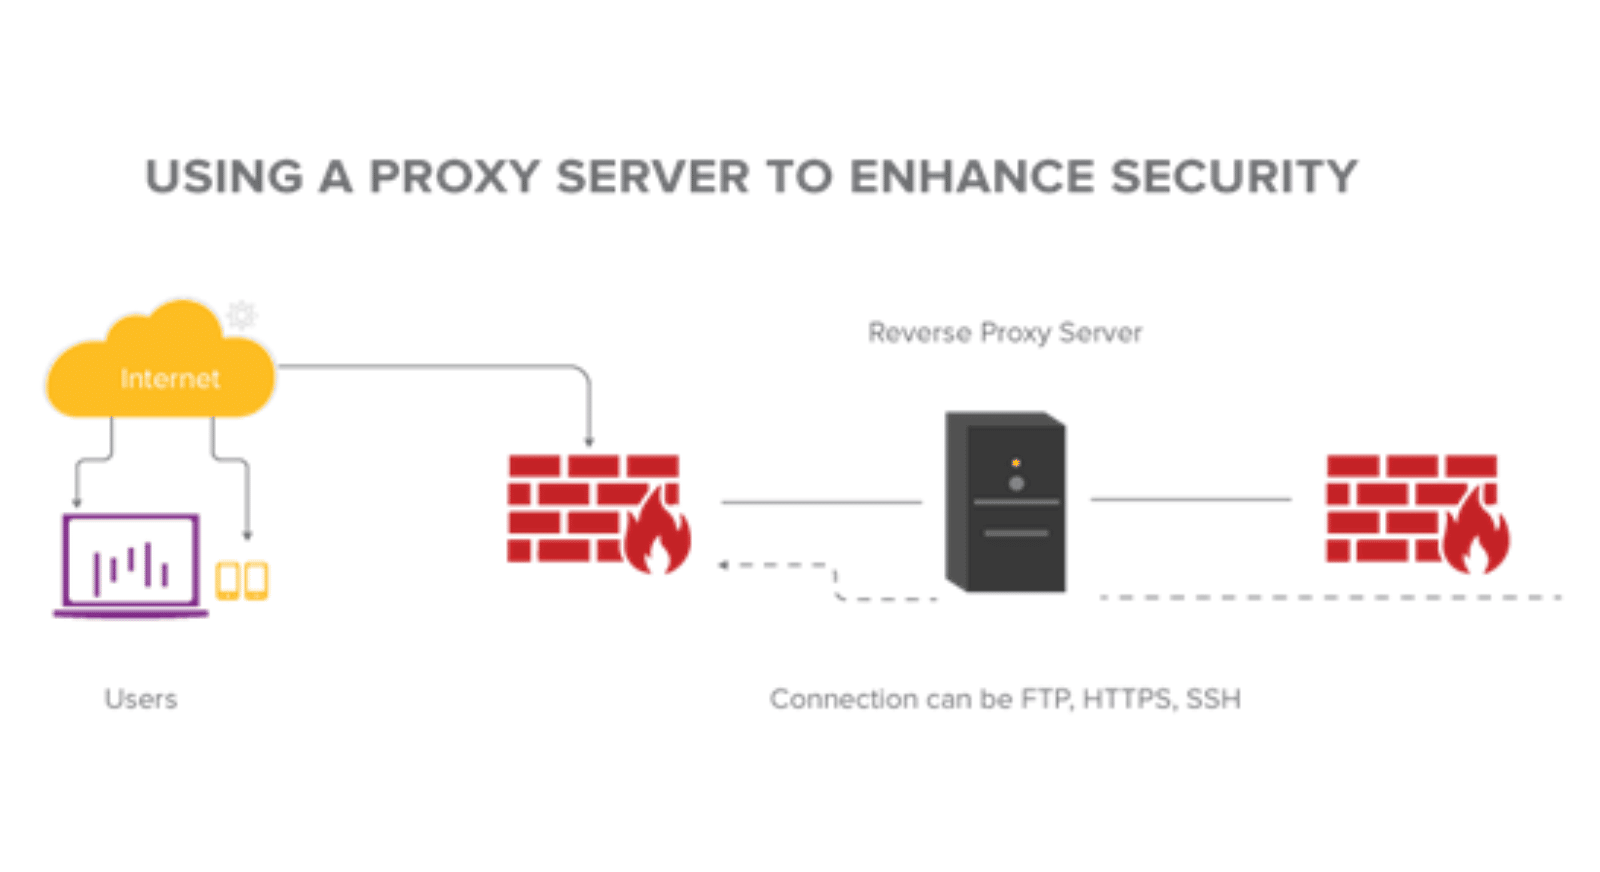 Een proxyserver kan dienen als firewall tegen aanvallen